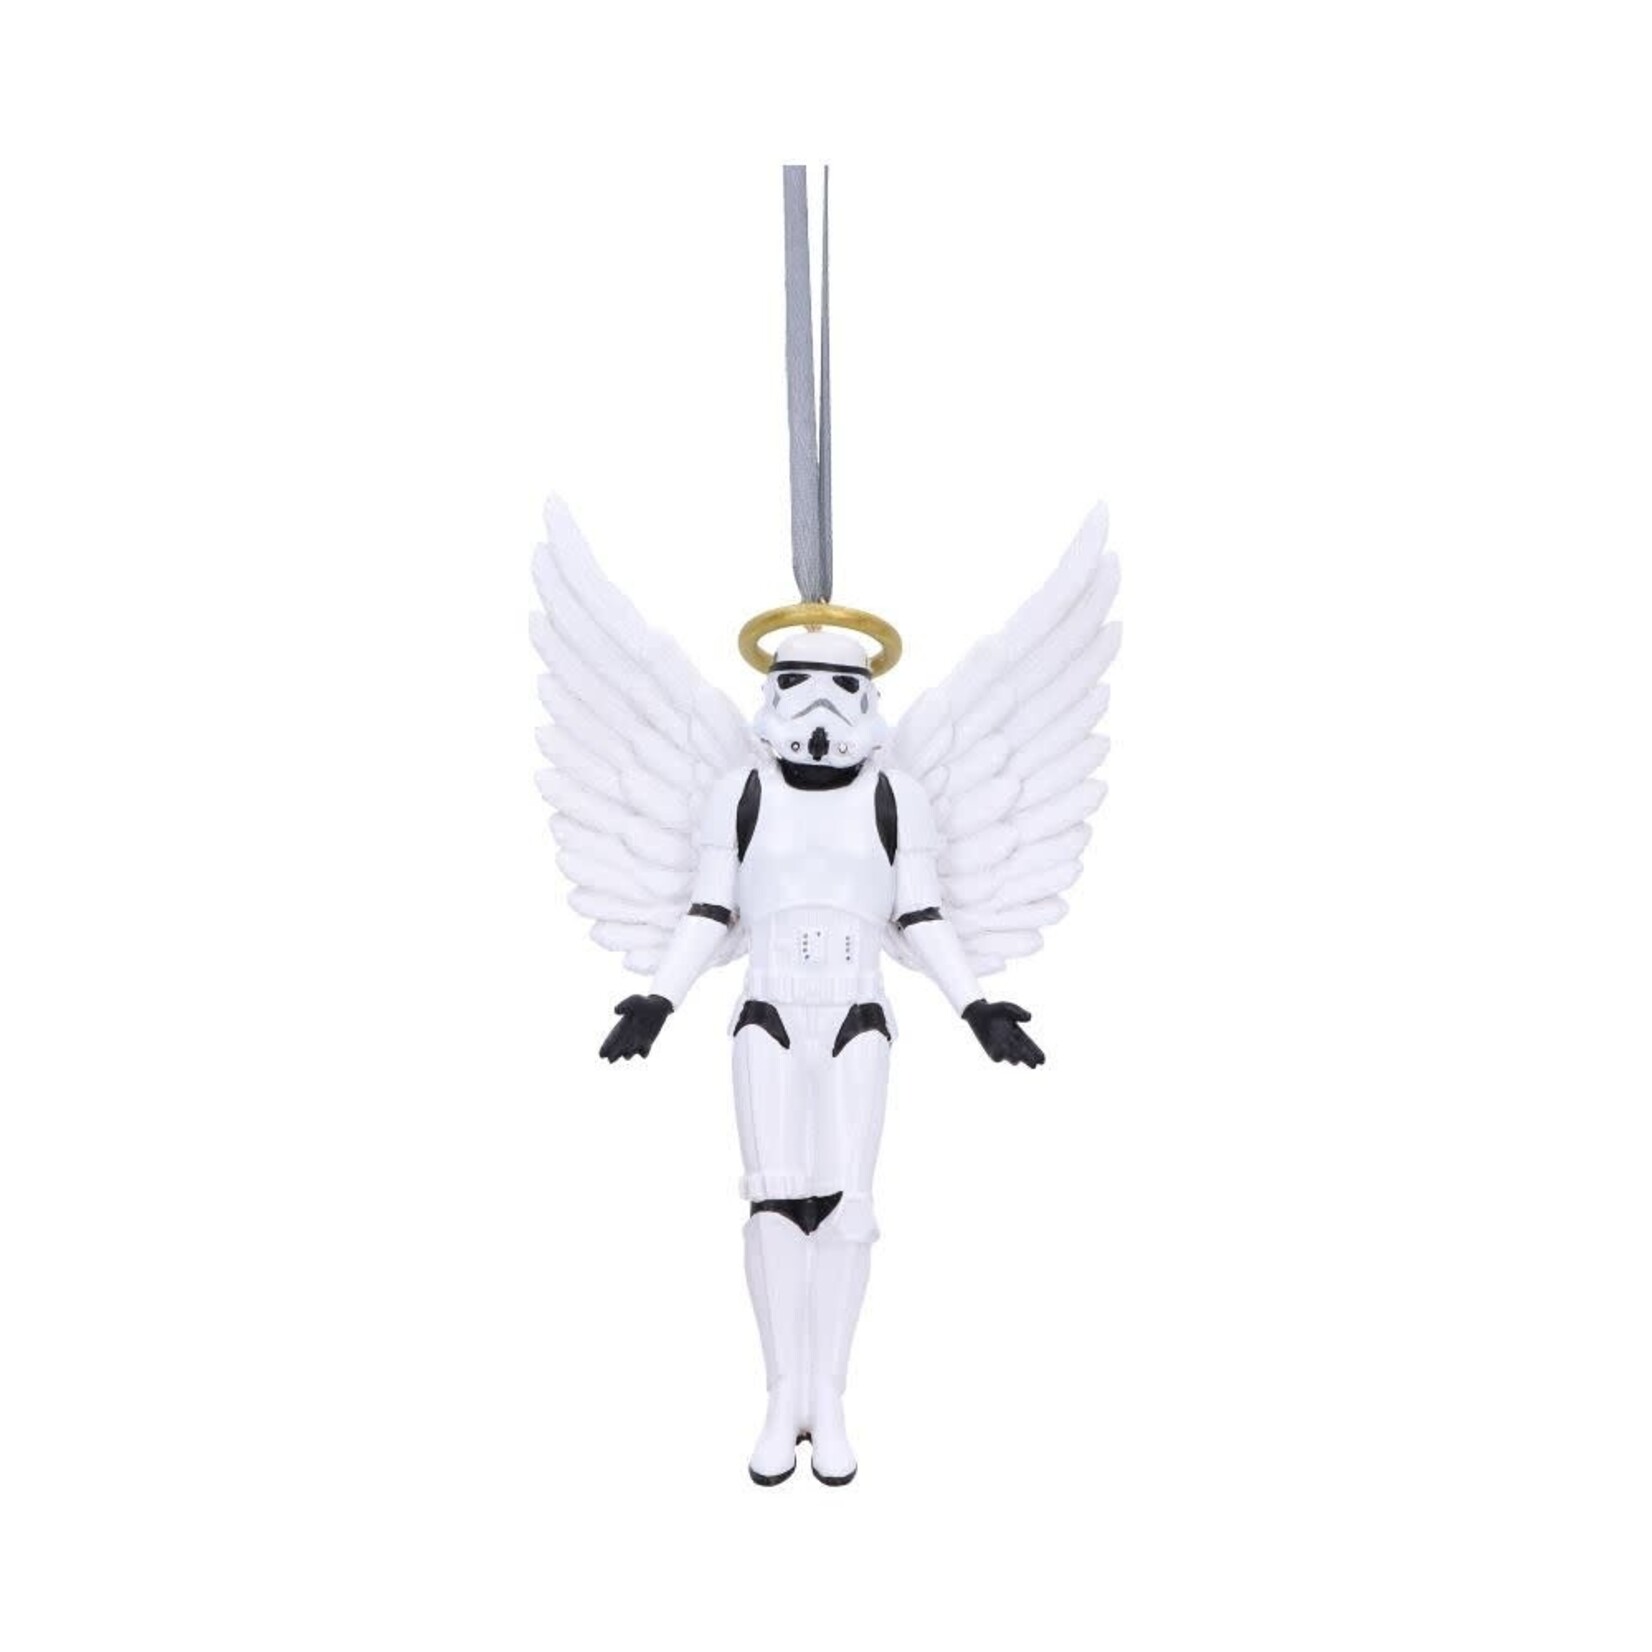 Star Wars Stormtrooper For Heaven’s Sake Hanging Decoration